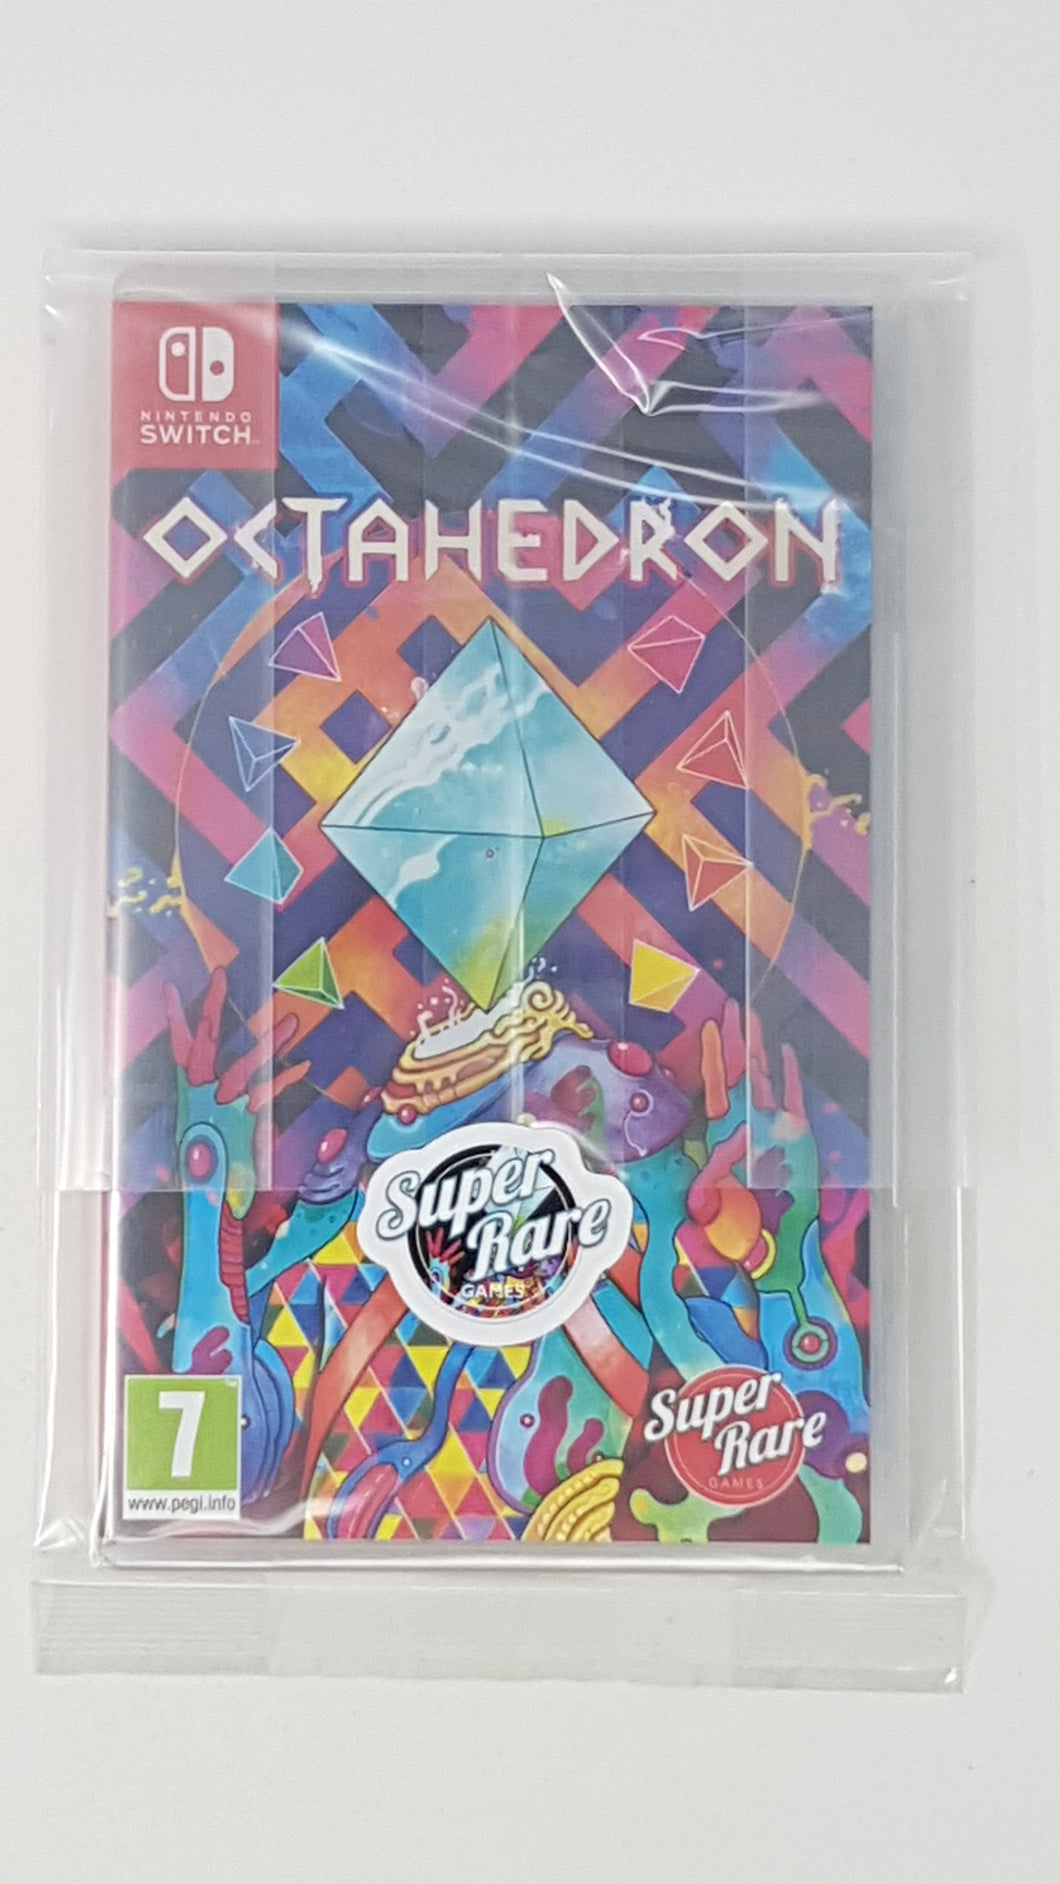 Octahedron SRG [new] - Nintendo Switch